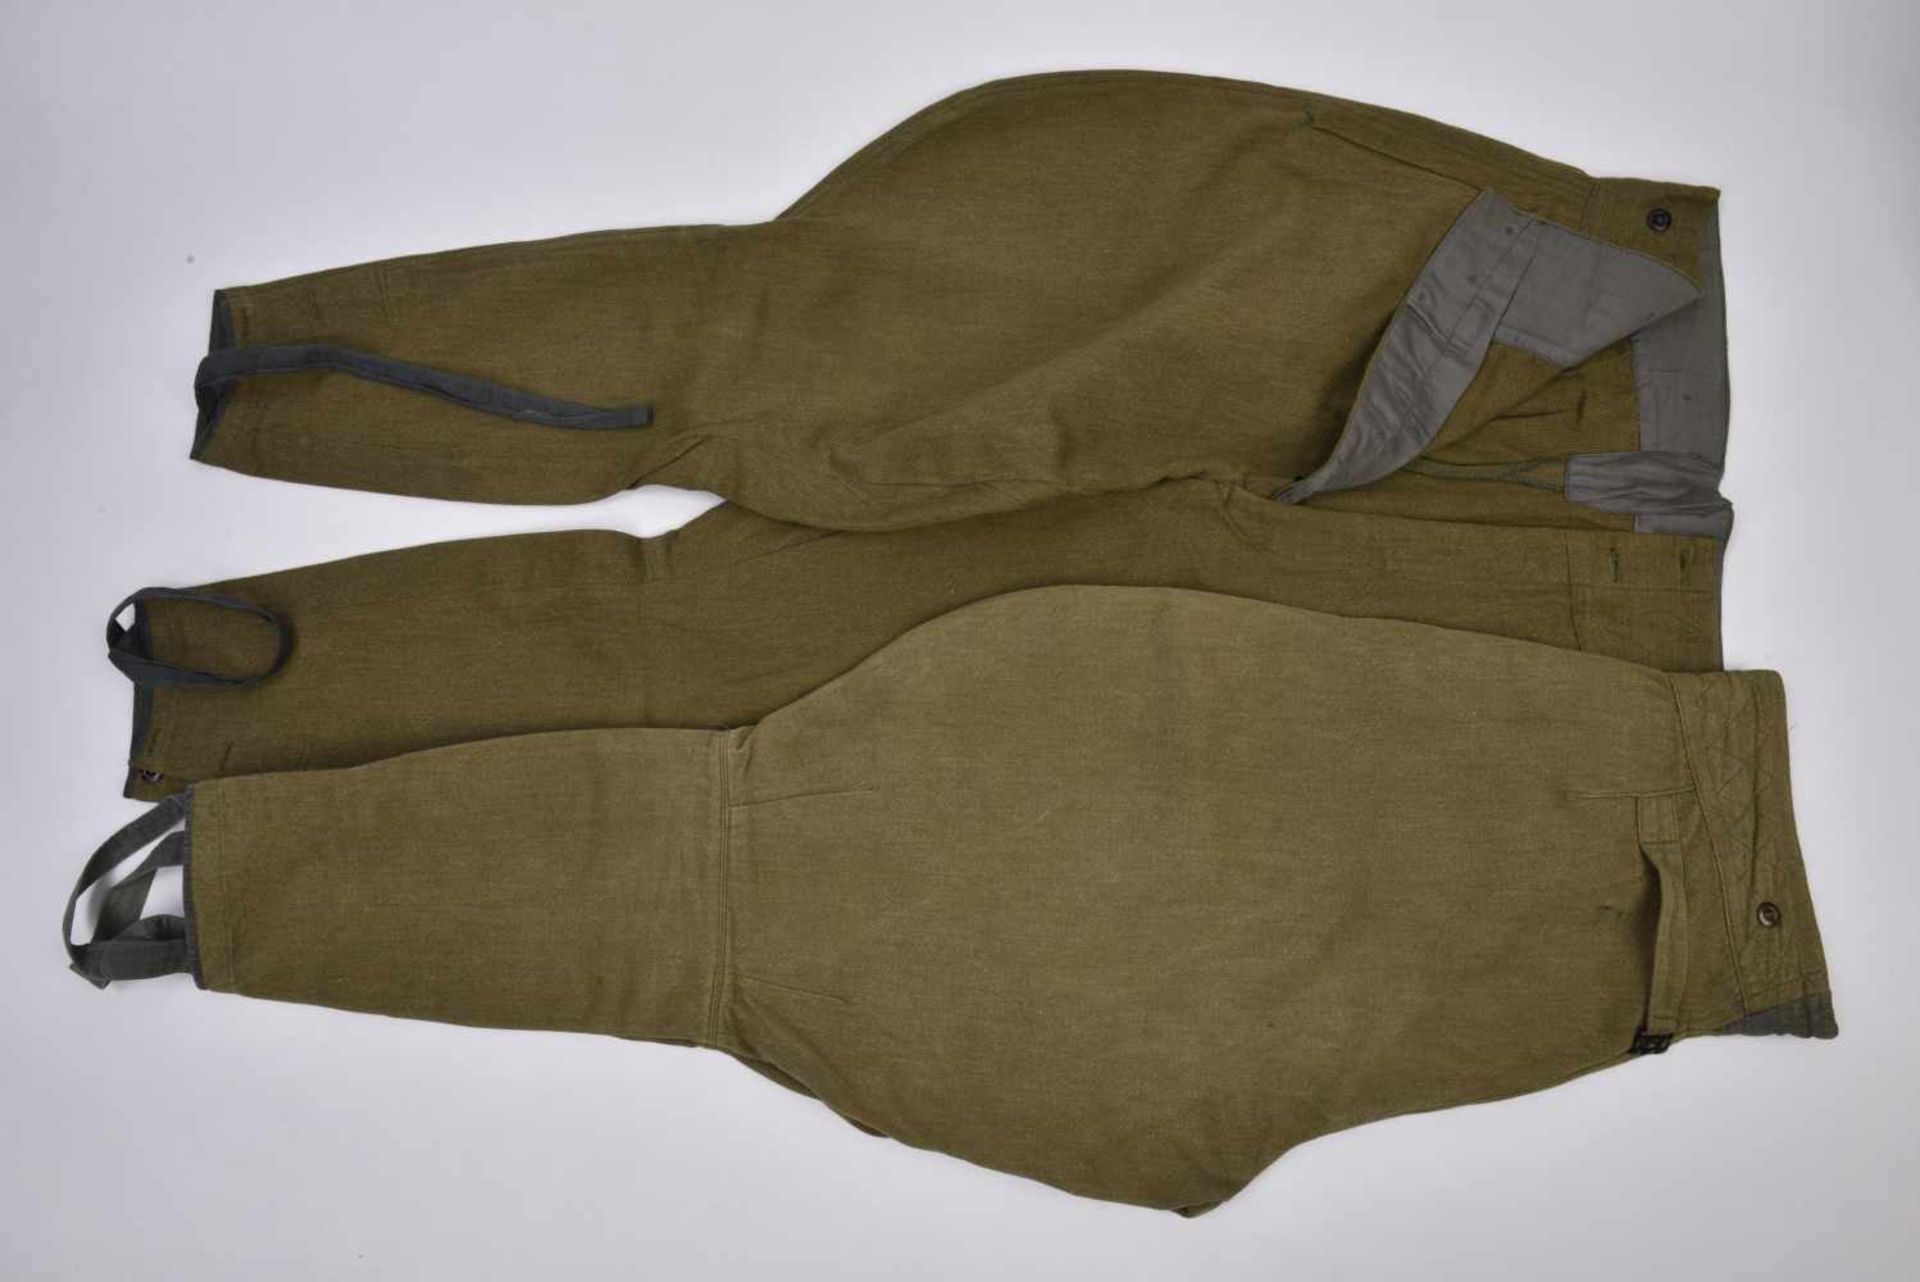 2 culottes troupes, après-guerre Bonne taille, bon état. Idéal pour la reconstitution. 2 trousers